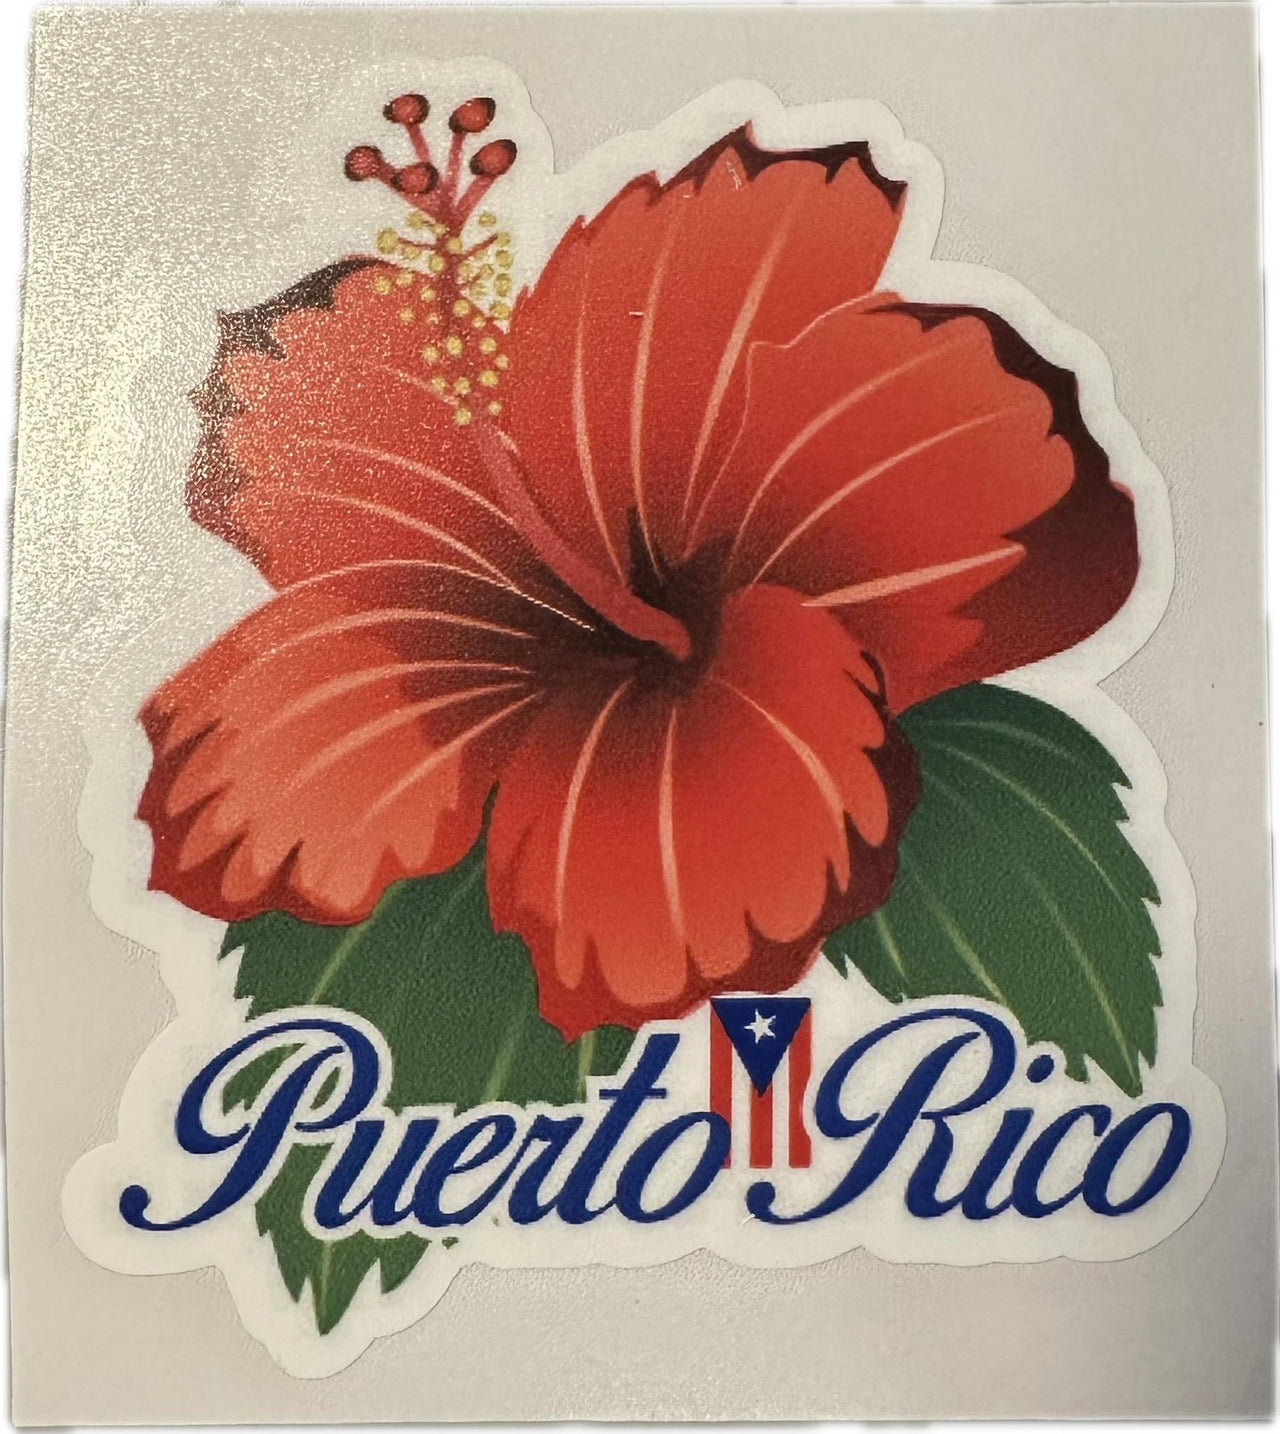 Puerto Rico Flower (Flor de Maga) Decal